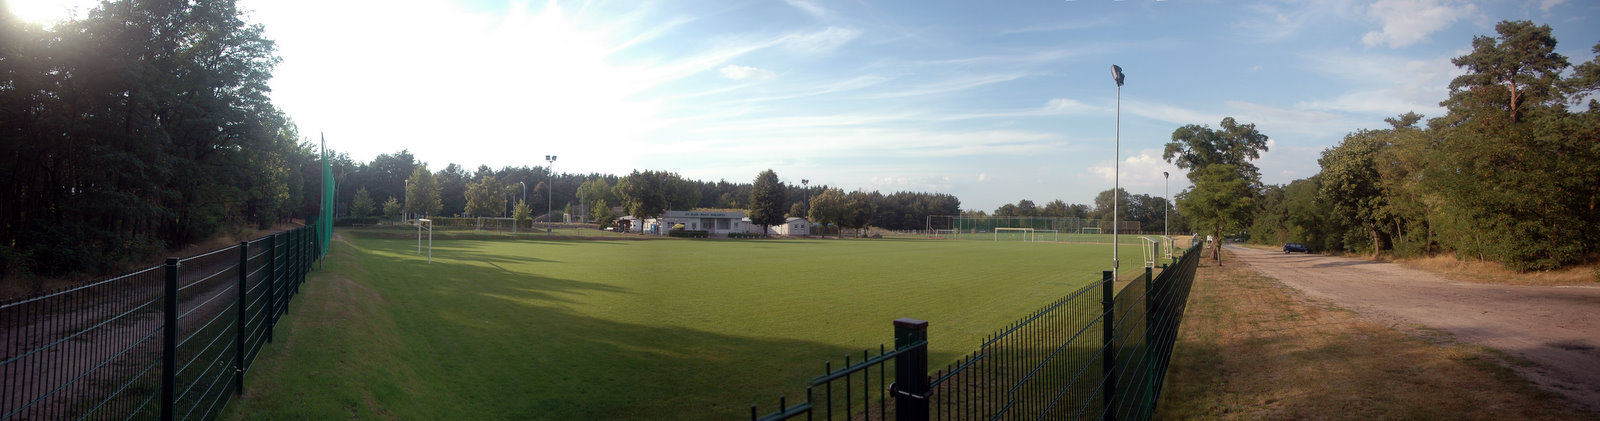 Sportplatz Panorama von Jan Treffkorn